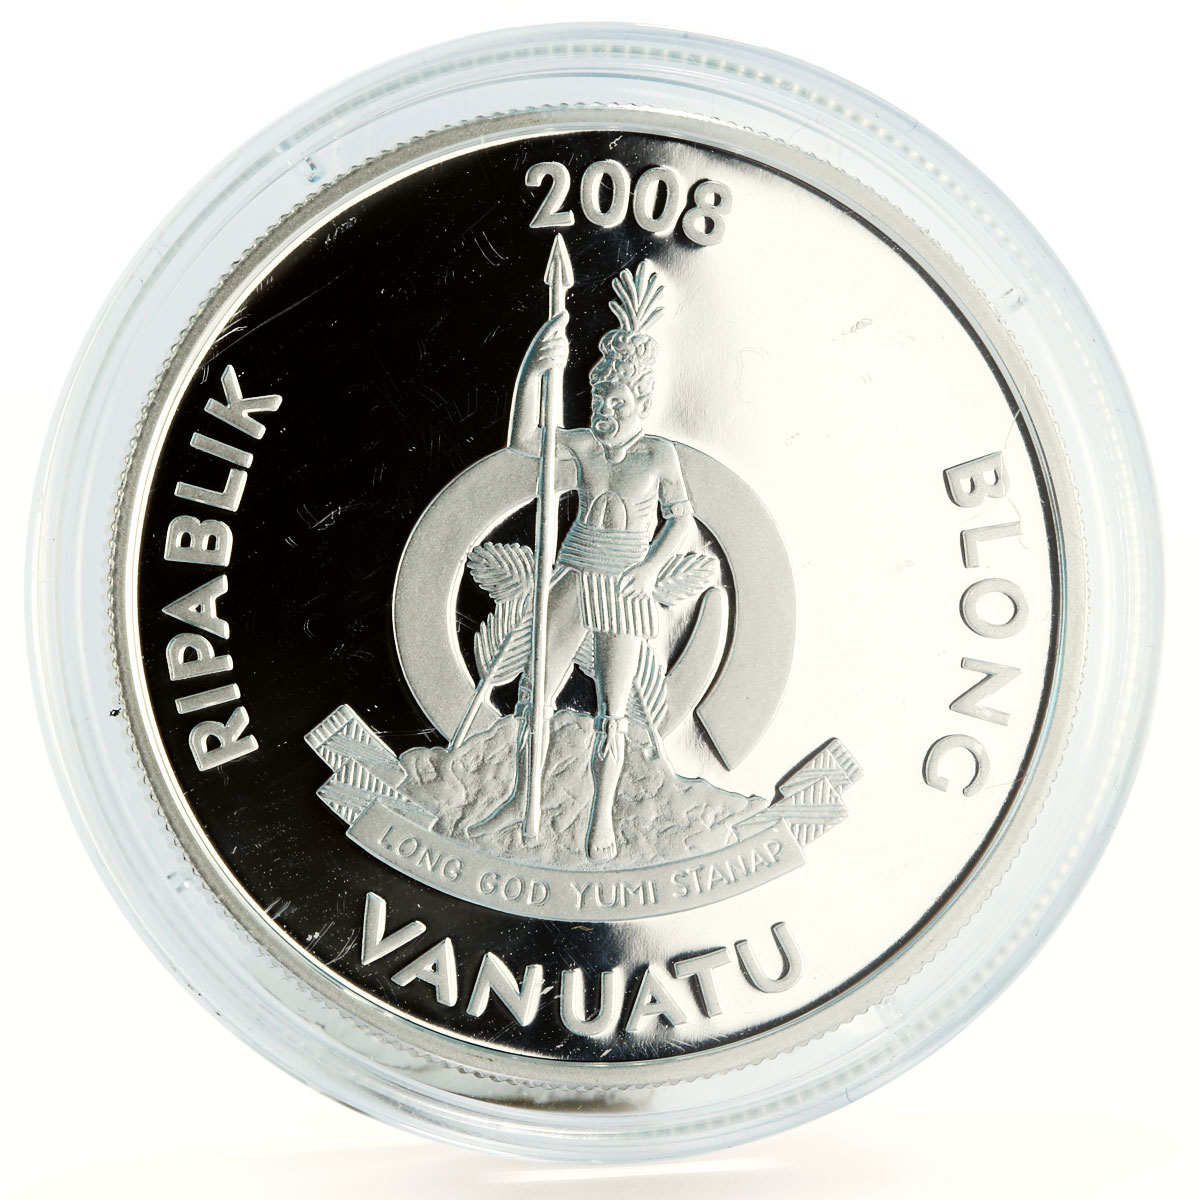 Vanuatu 50 vatu History of Seafaring Ship Europe Clipper silver coin 2008